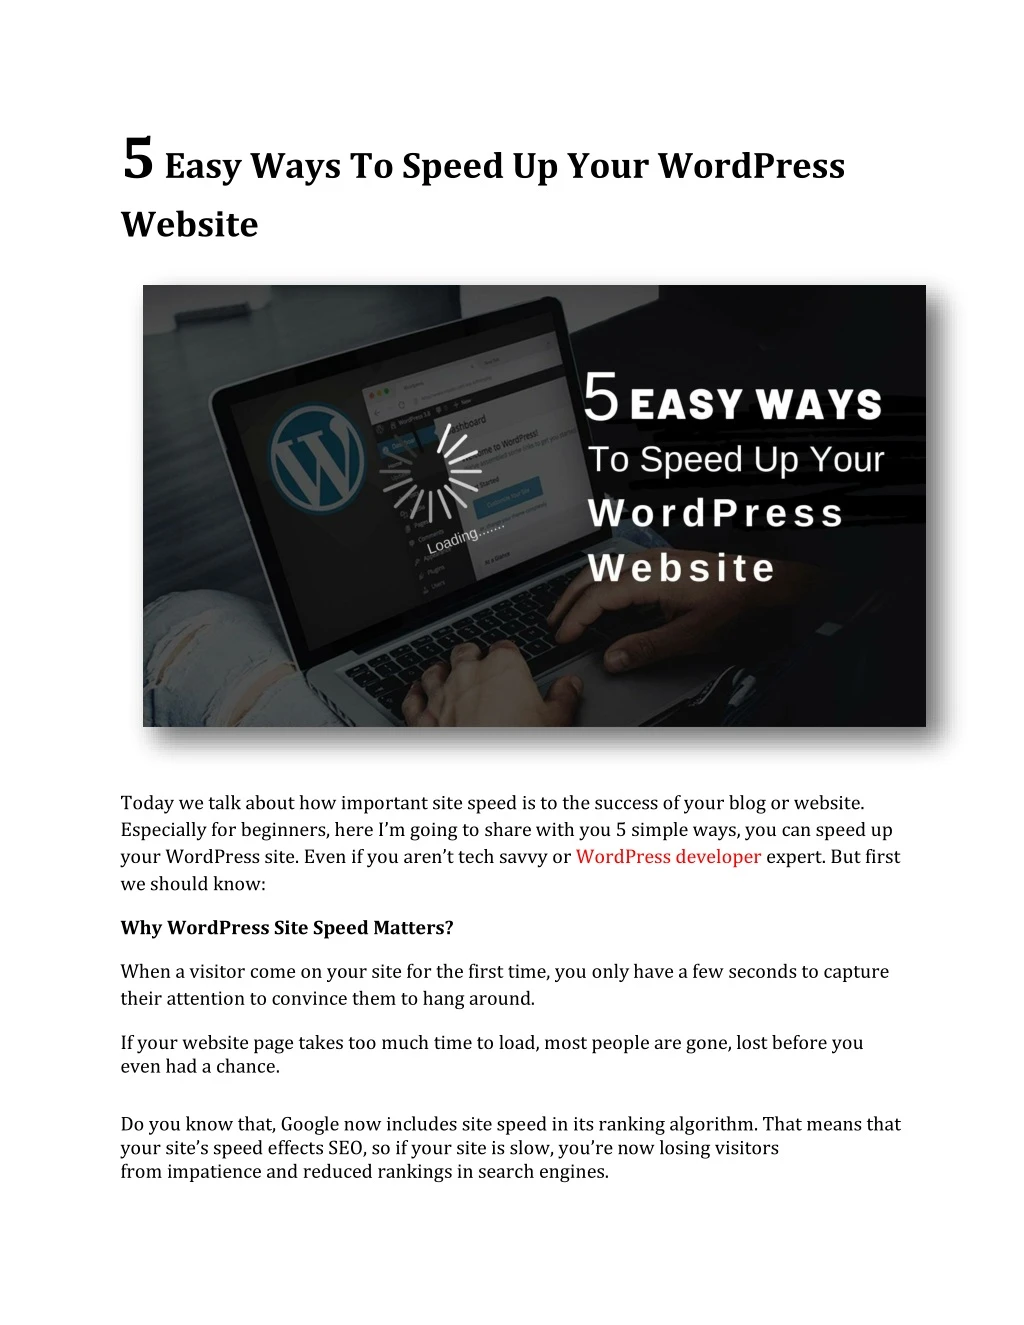 5 easy ways to speed up your wordpress website